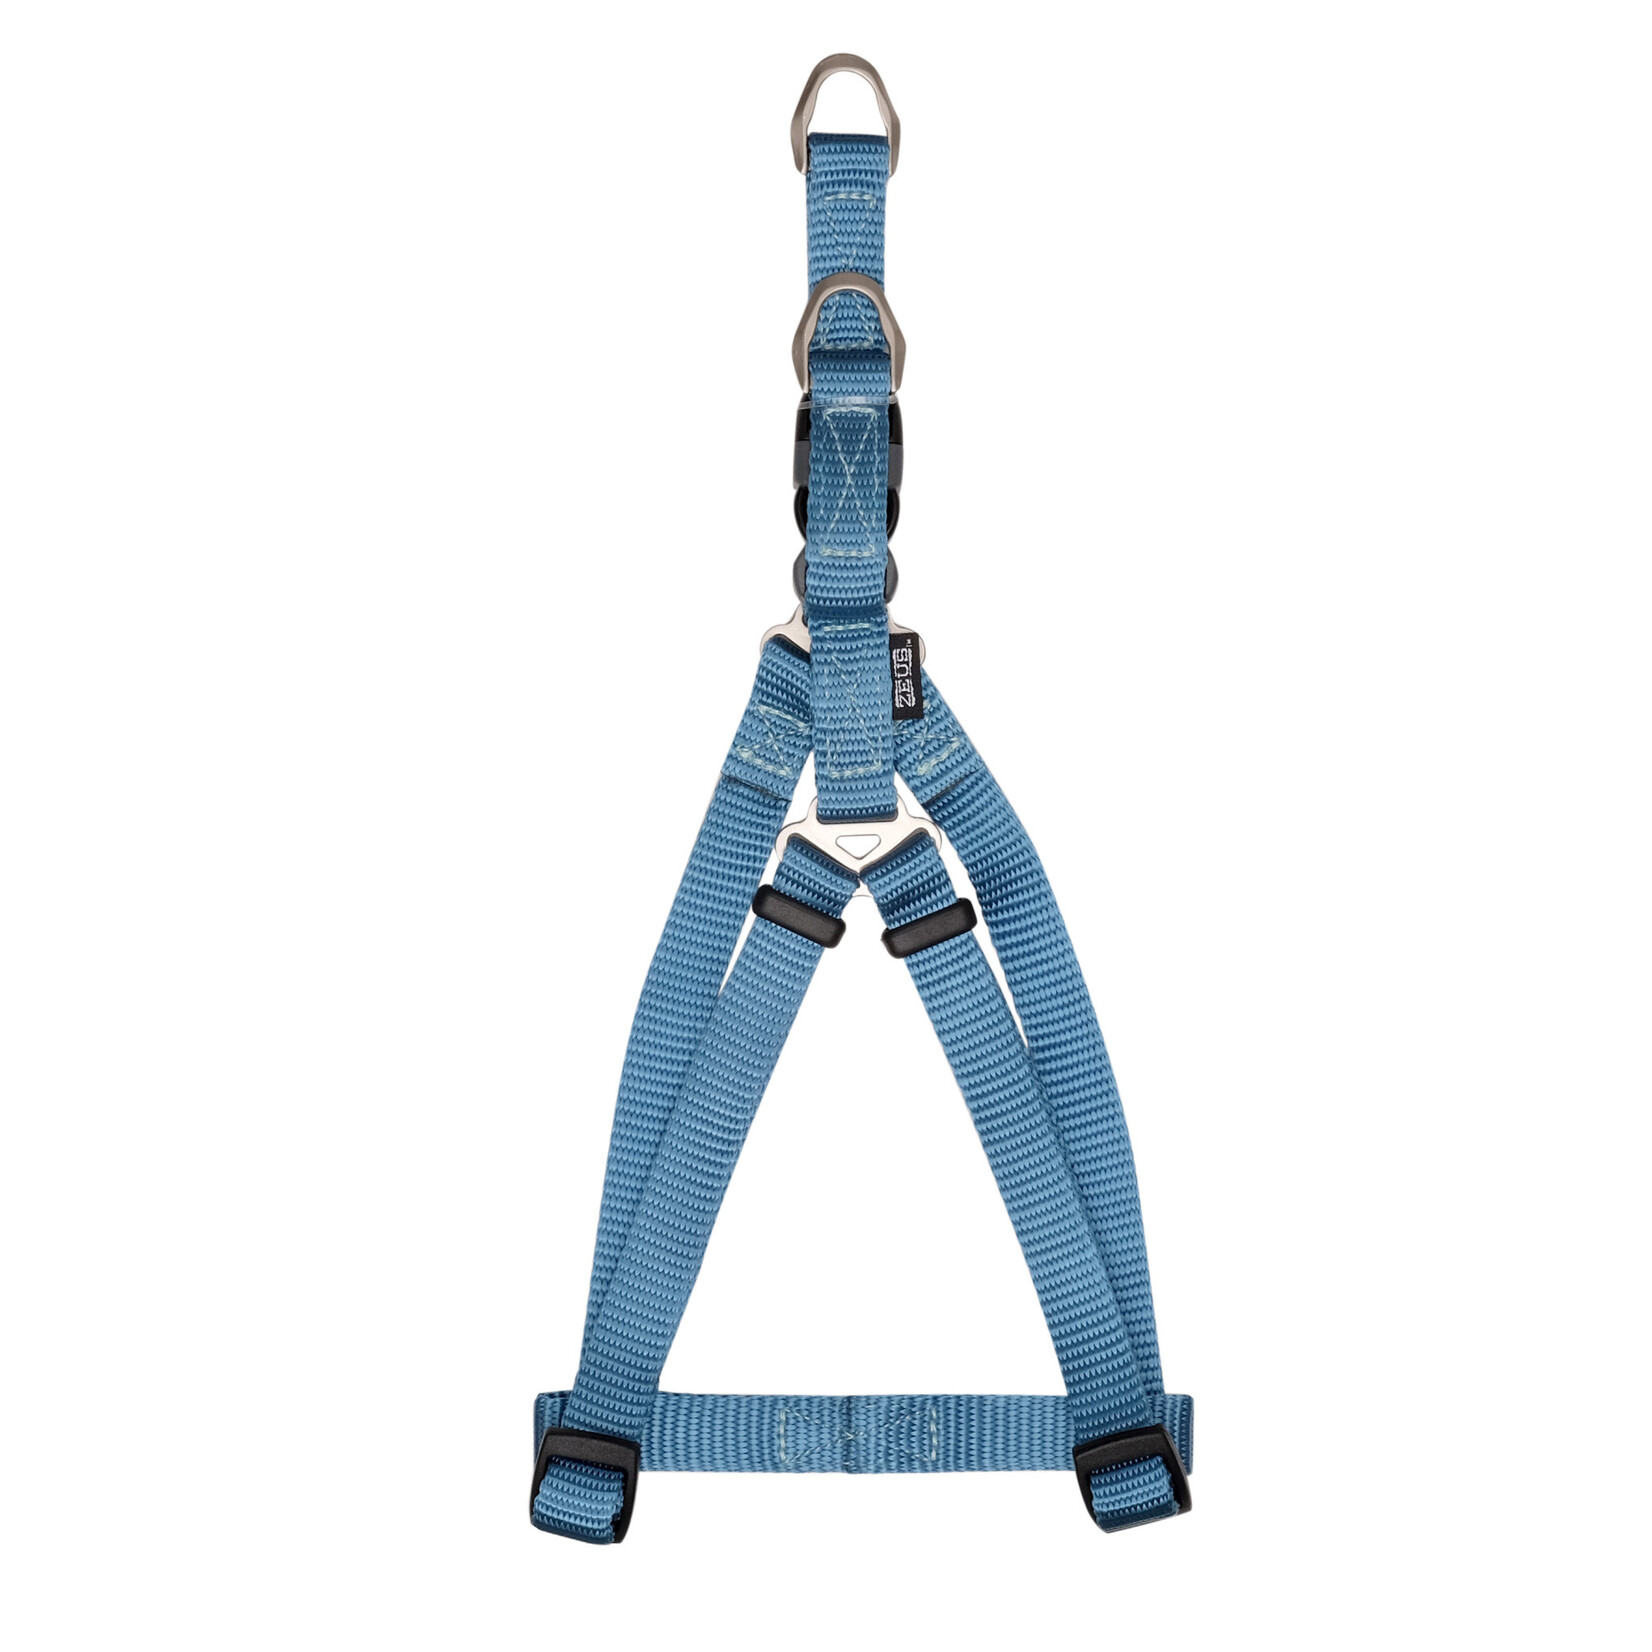 ZEUS Zeus Nylon Step-In Dog Harness - Denim Blue - Small - 1 cm x 33 cm-45 cm (3/8in x 13in-18in)